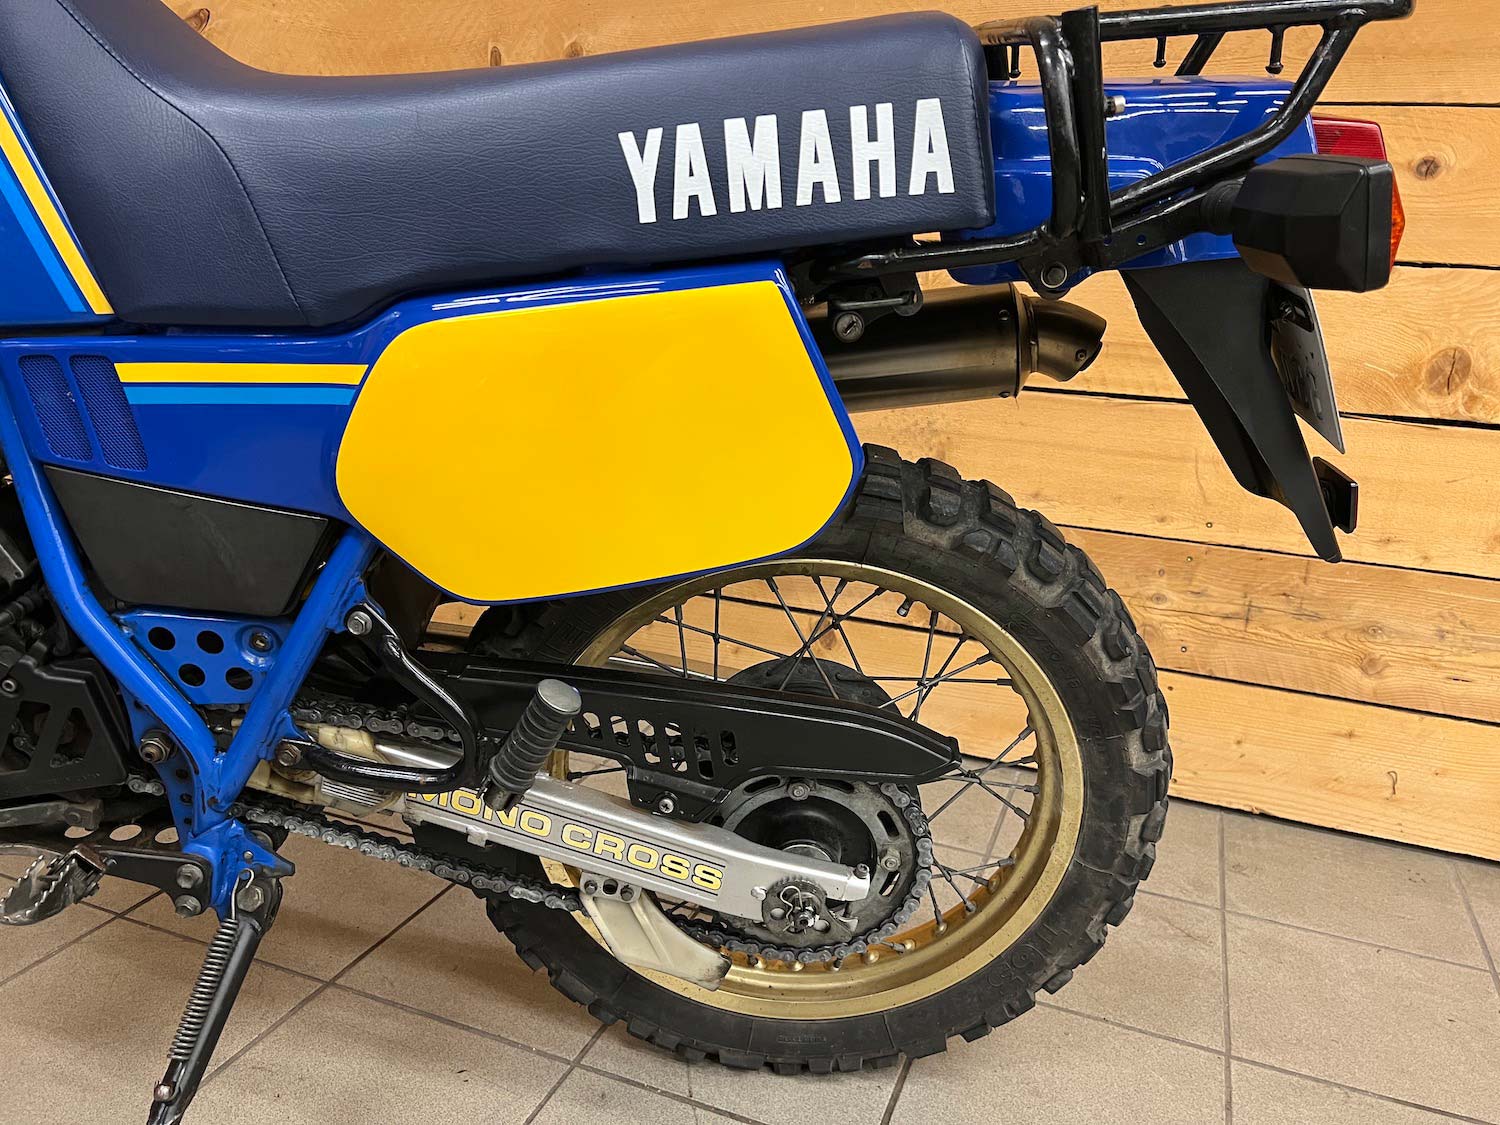 Yamaha_Tenere_XTZ600_cezanne_classic_motorcycle-147.jpg